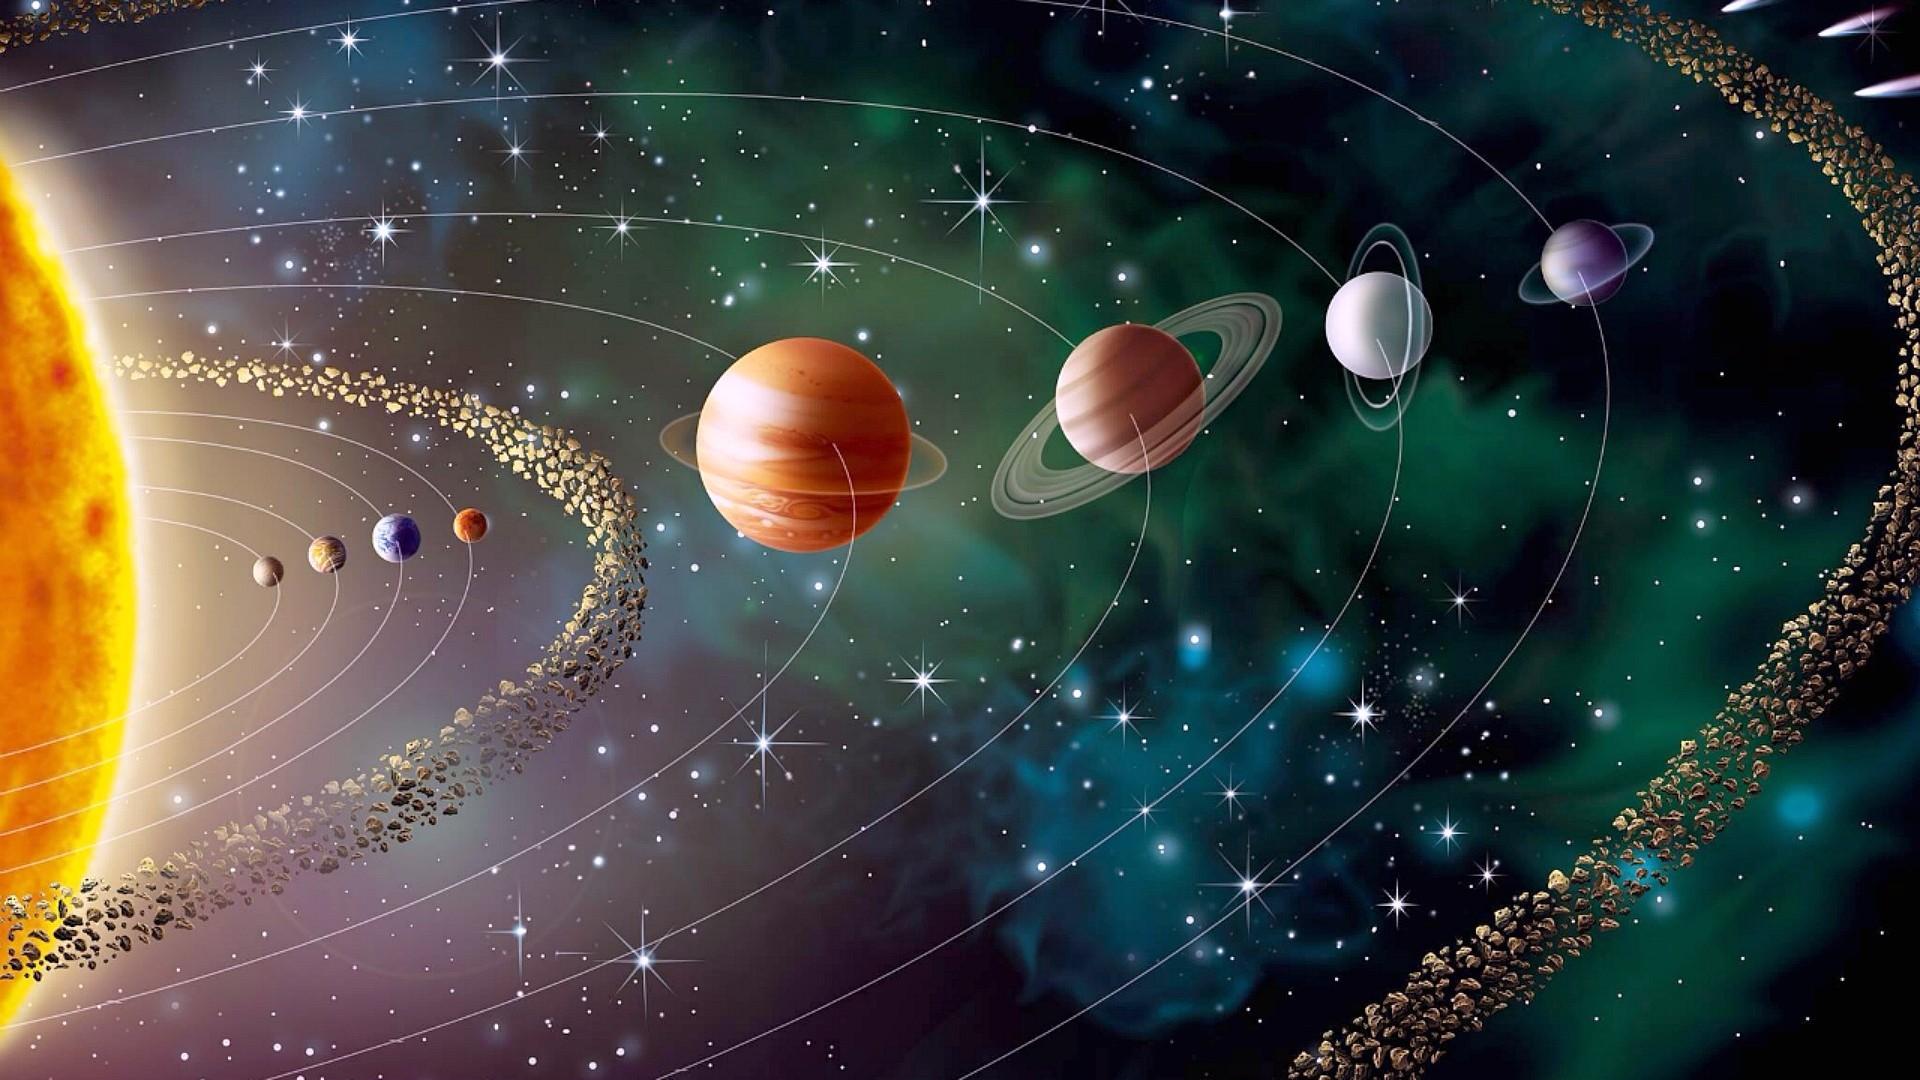 quants sistemes solars hi ha a l'univers